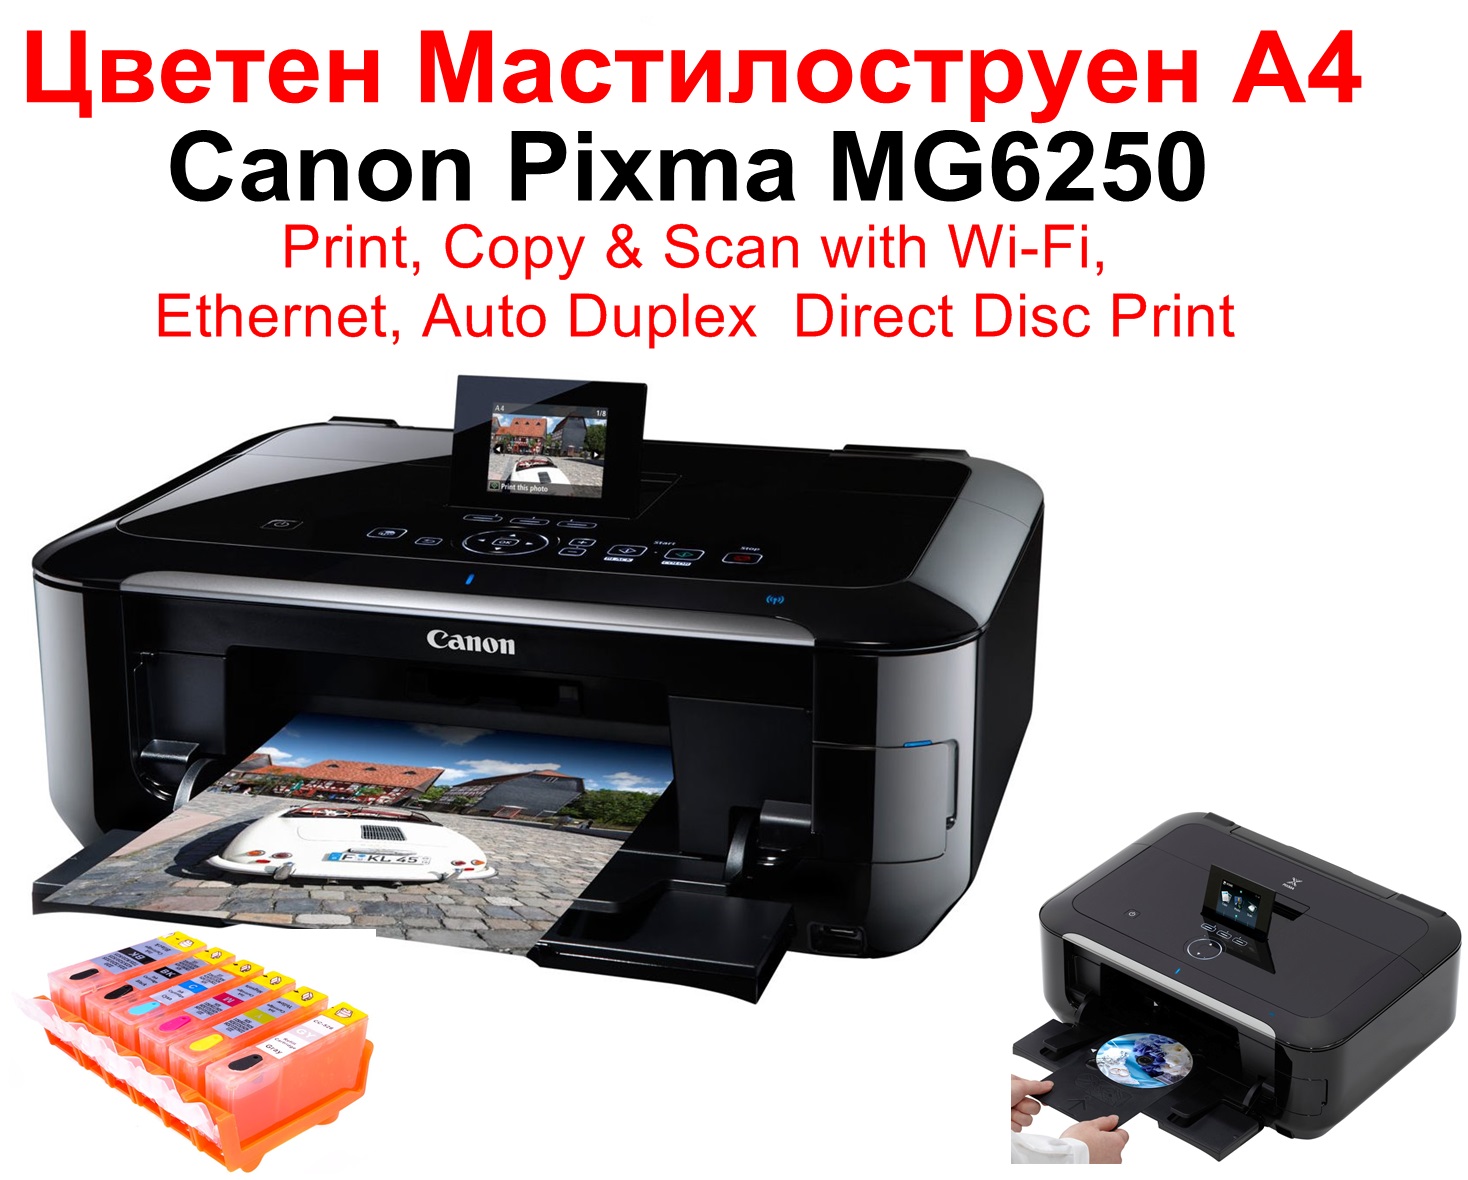 All-in-One Printer Canon Pixma |